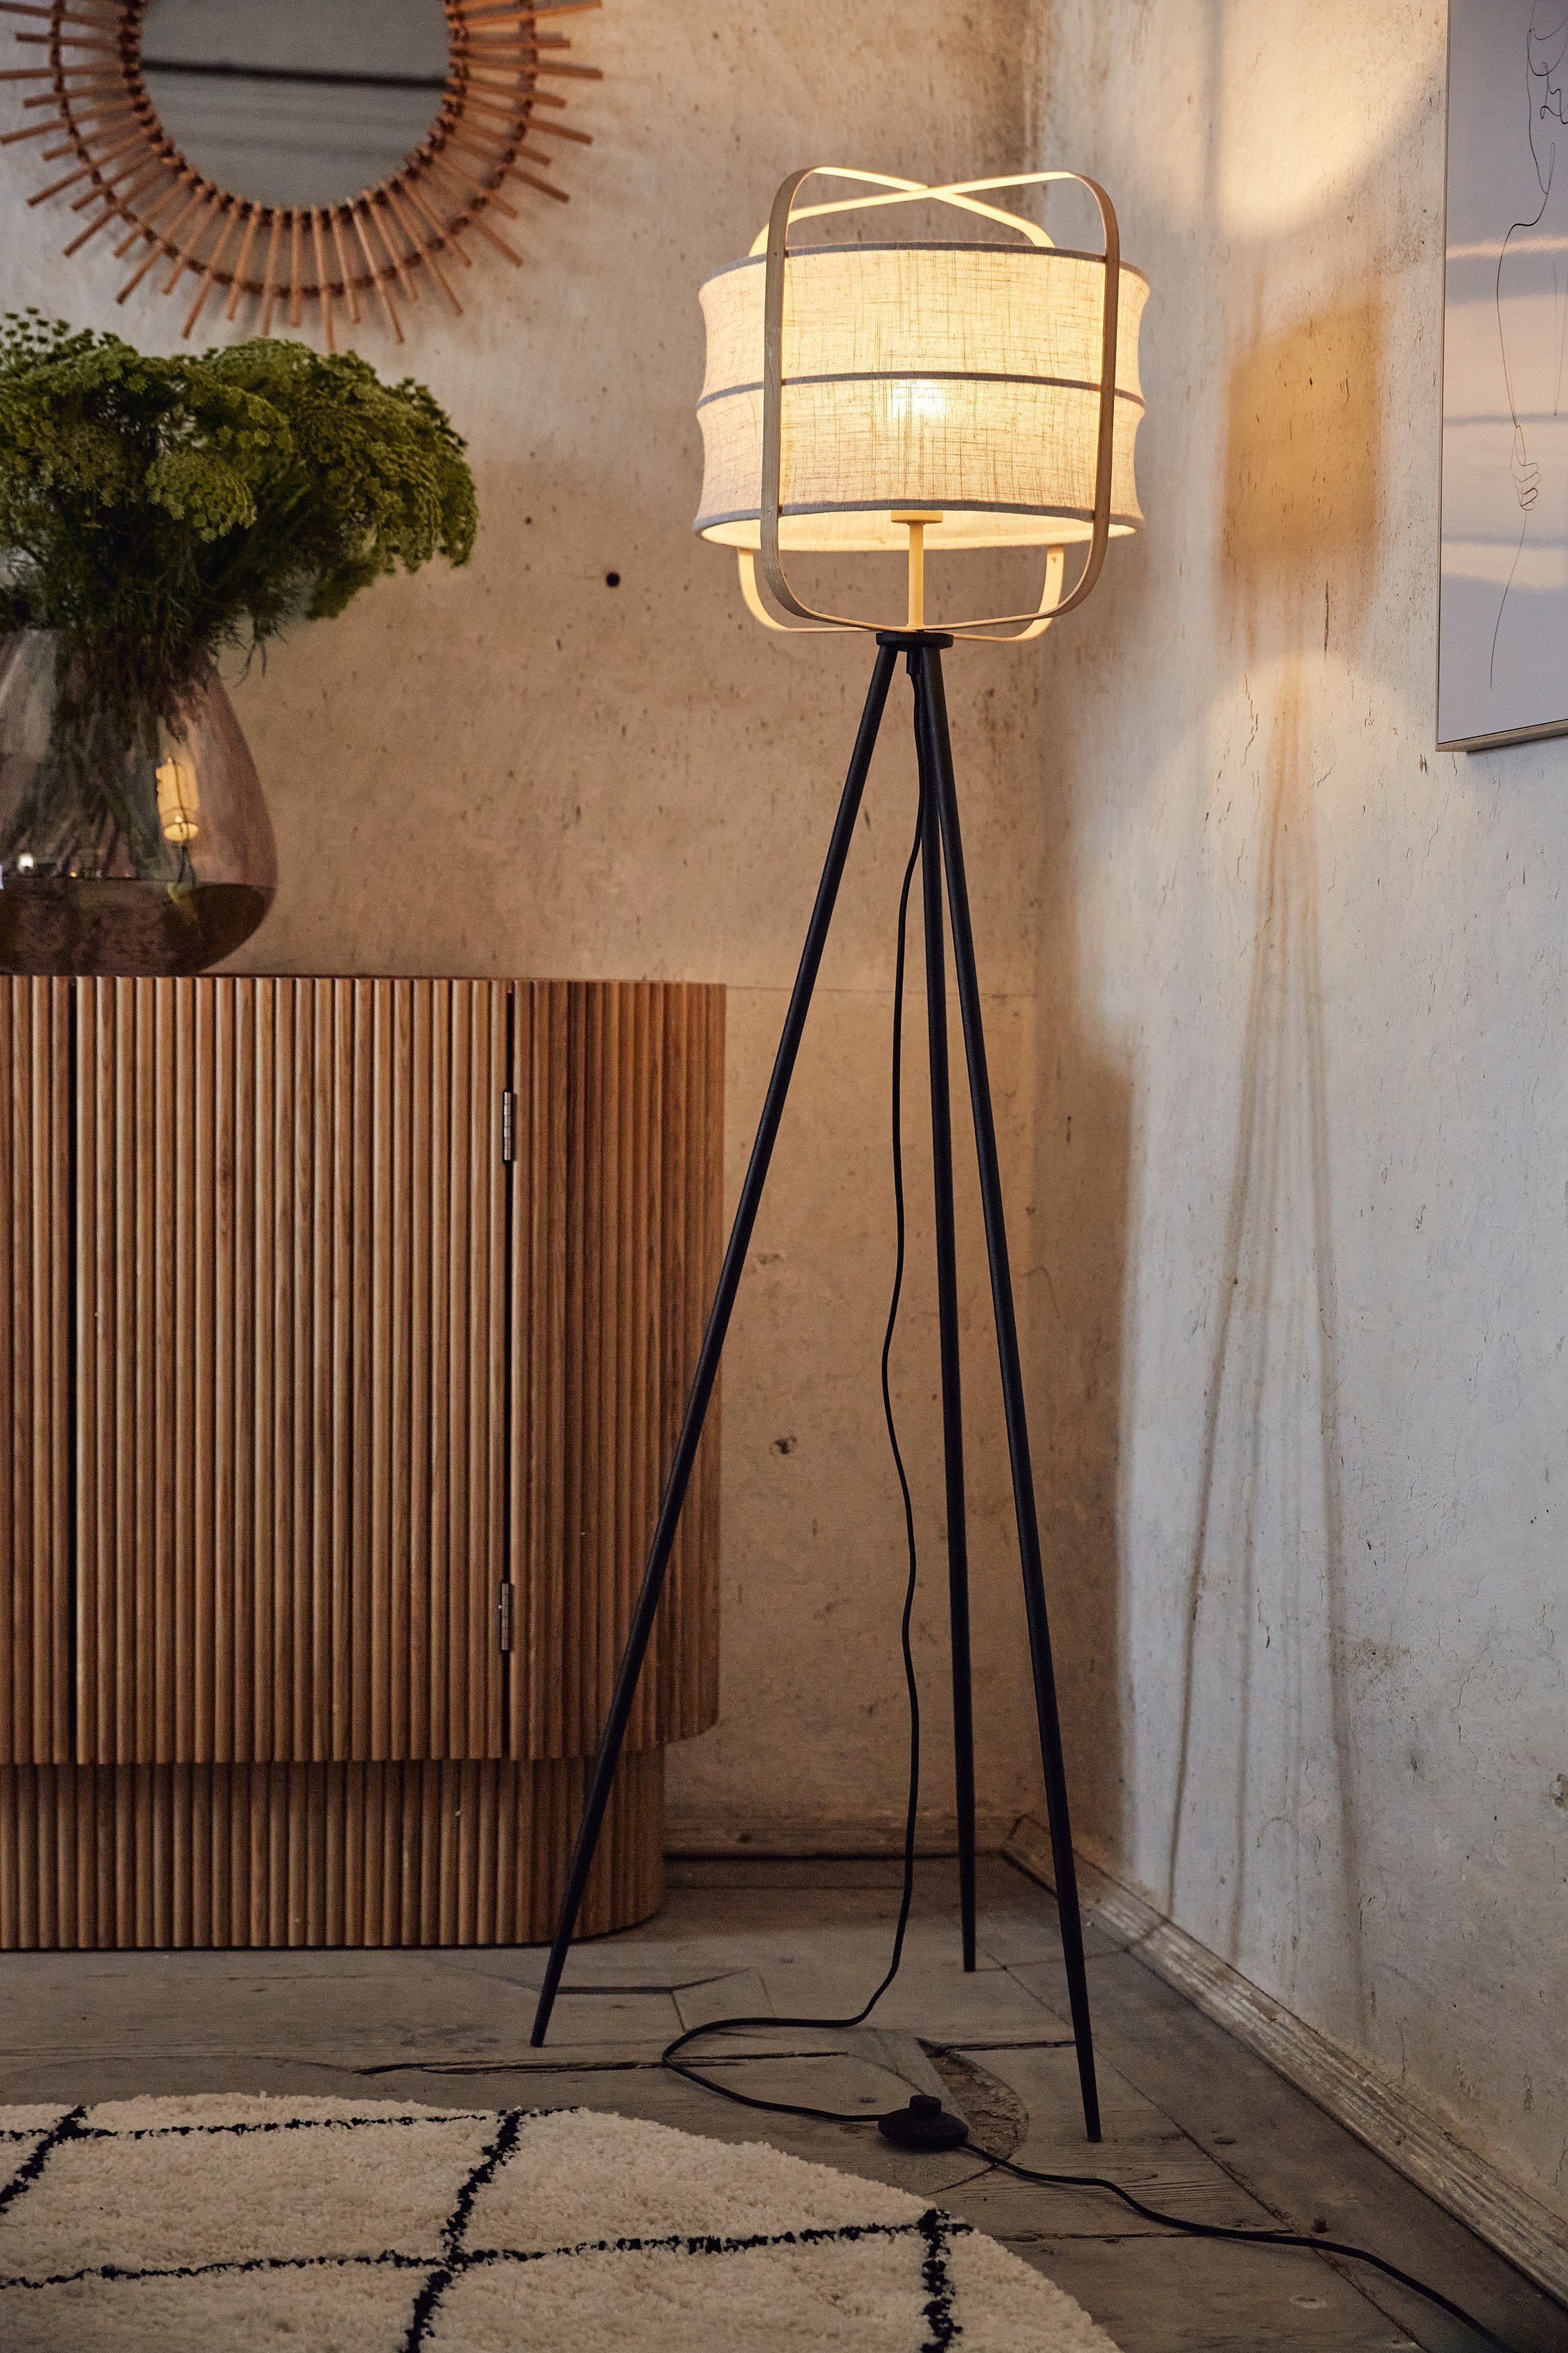 Home affaire Stehlampe Schirm mit Standleuchte Holz E27, Leuchtmittel, McAnany Way, Textil Rahmen, und beige/natur ohne